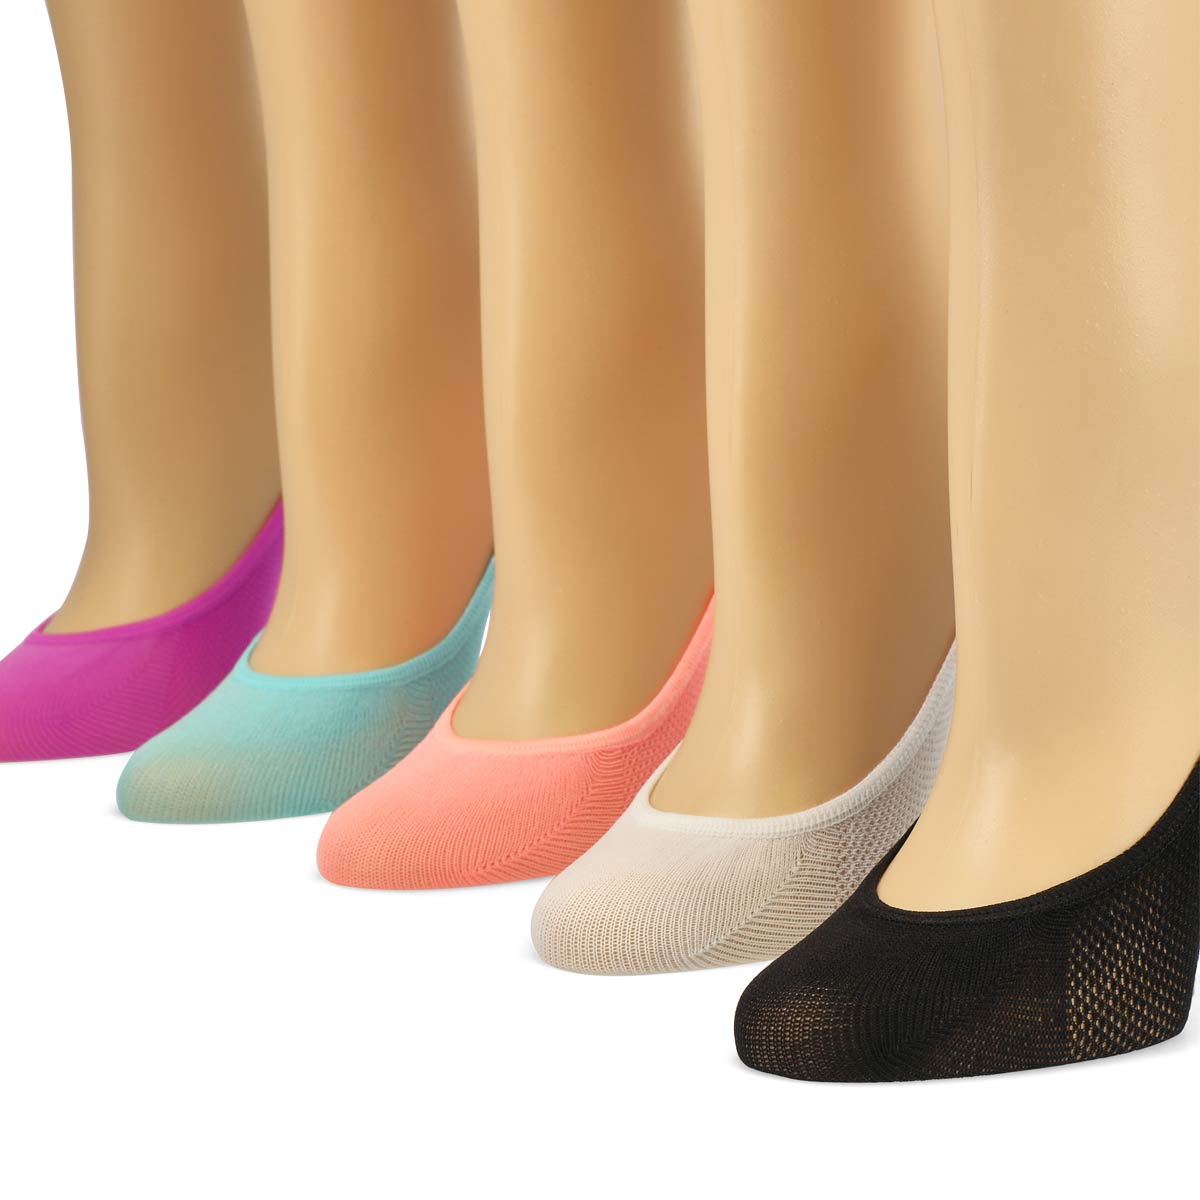 Socquettes SUPERLOW LINER, femmes - 5 paires